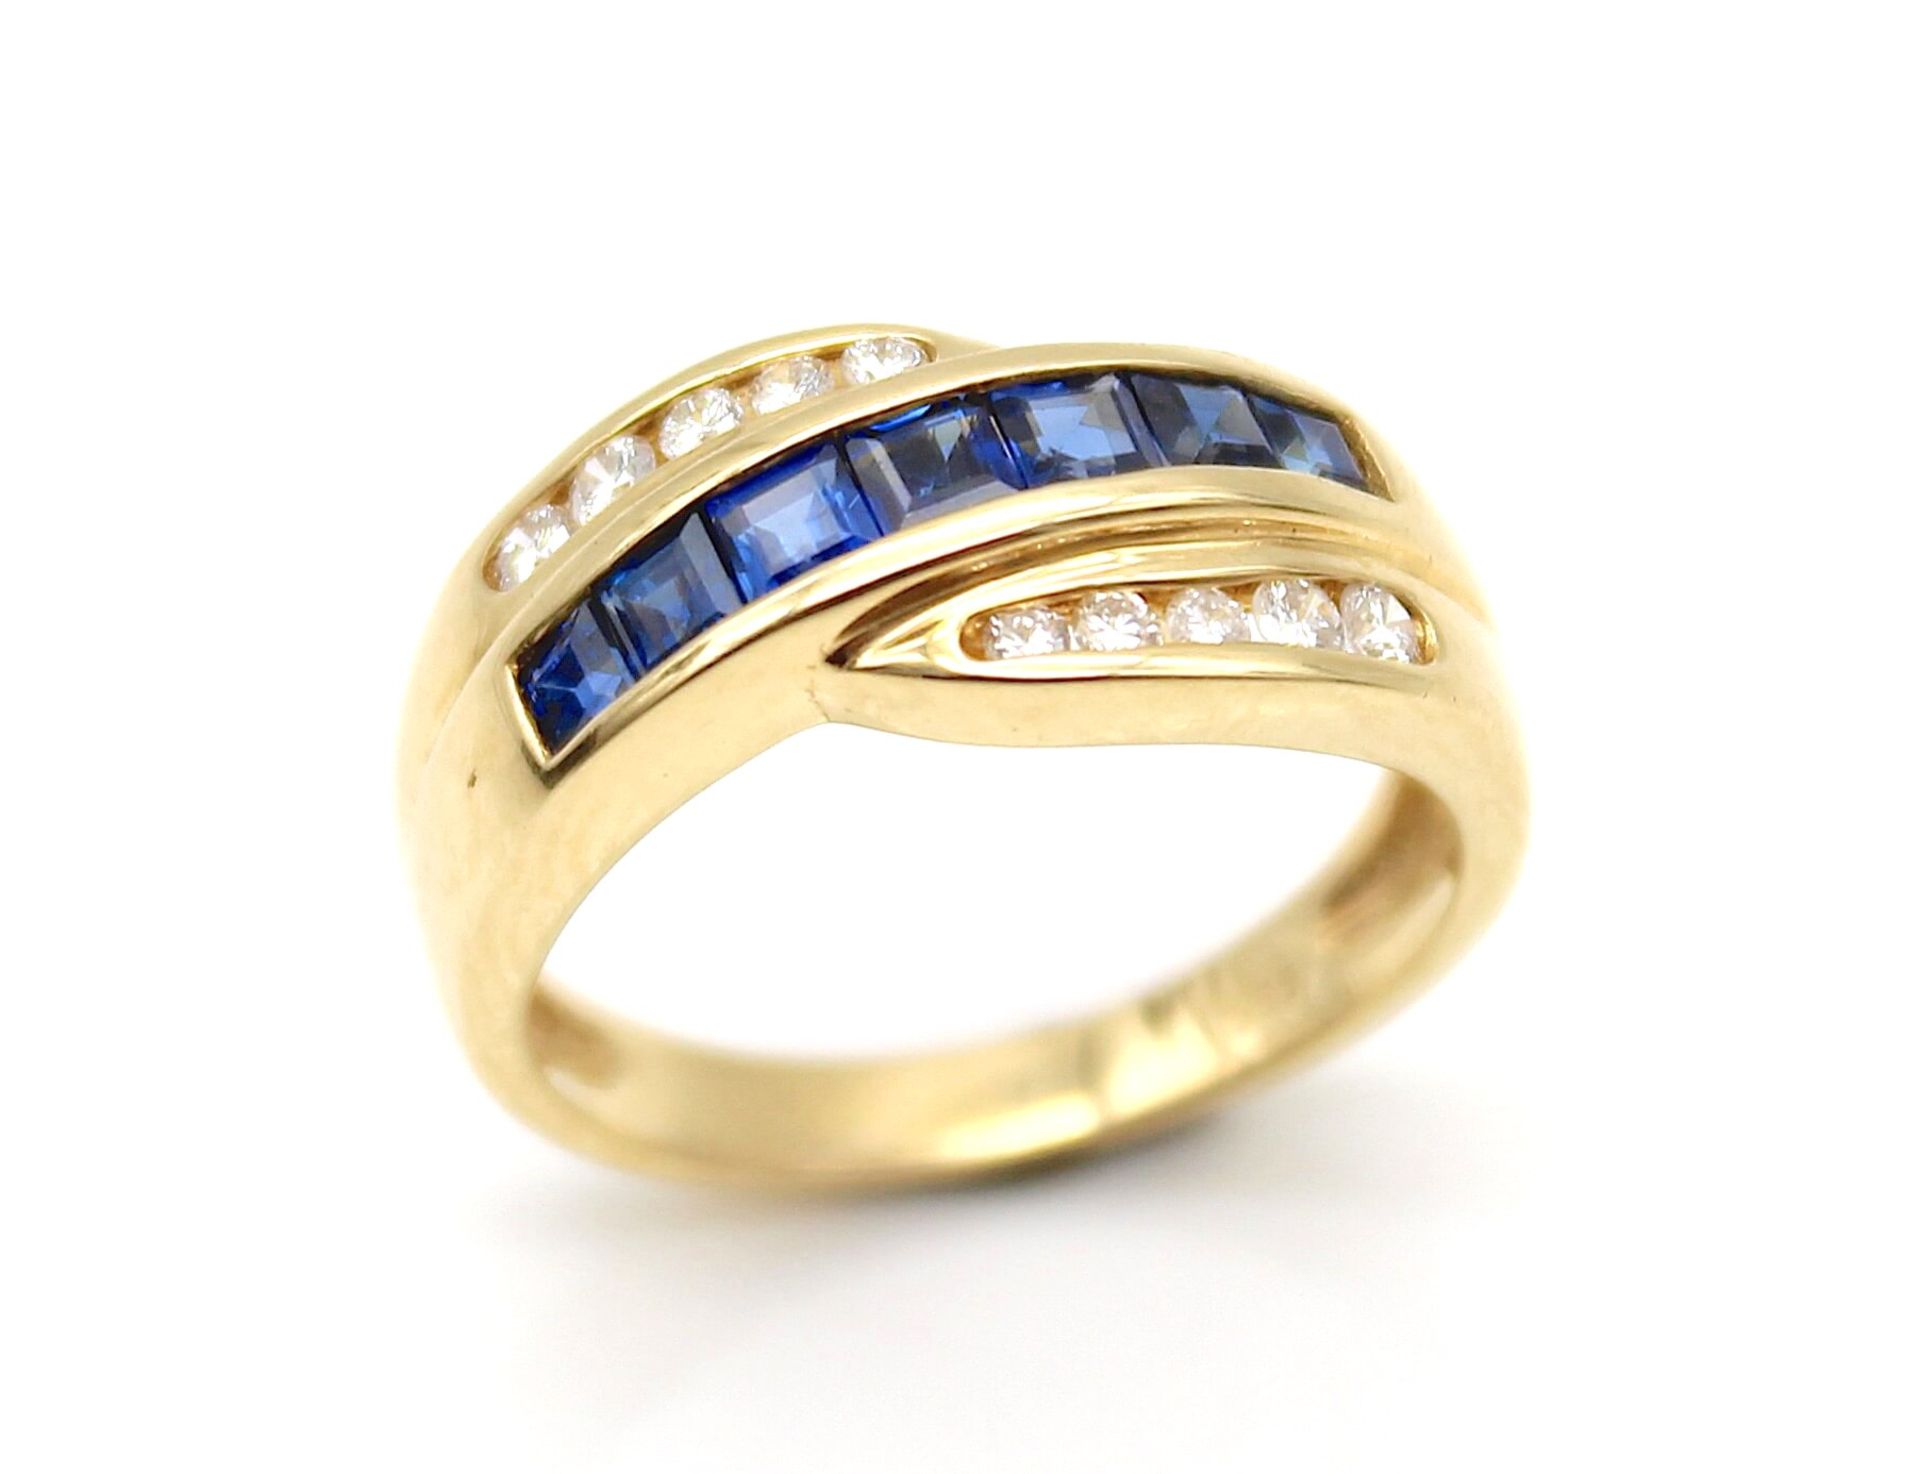 Ring aus 585er Gold mit 7 Saphiren, gesamt ca. 0,90 ct und 10 Brillanten, gesamt ca. 0,20 ct in